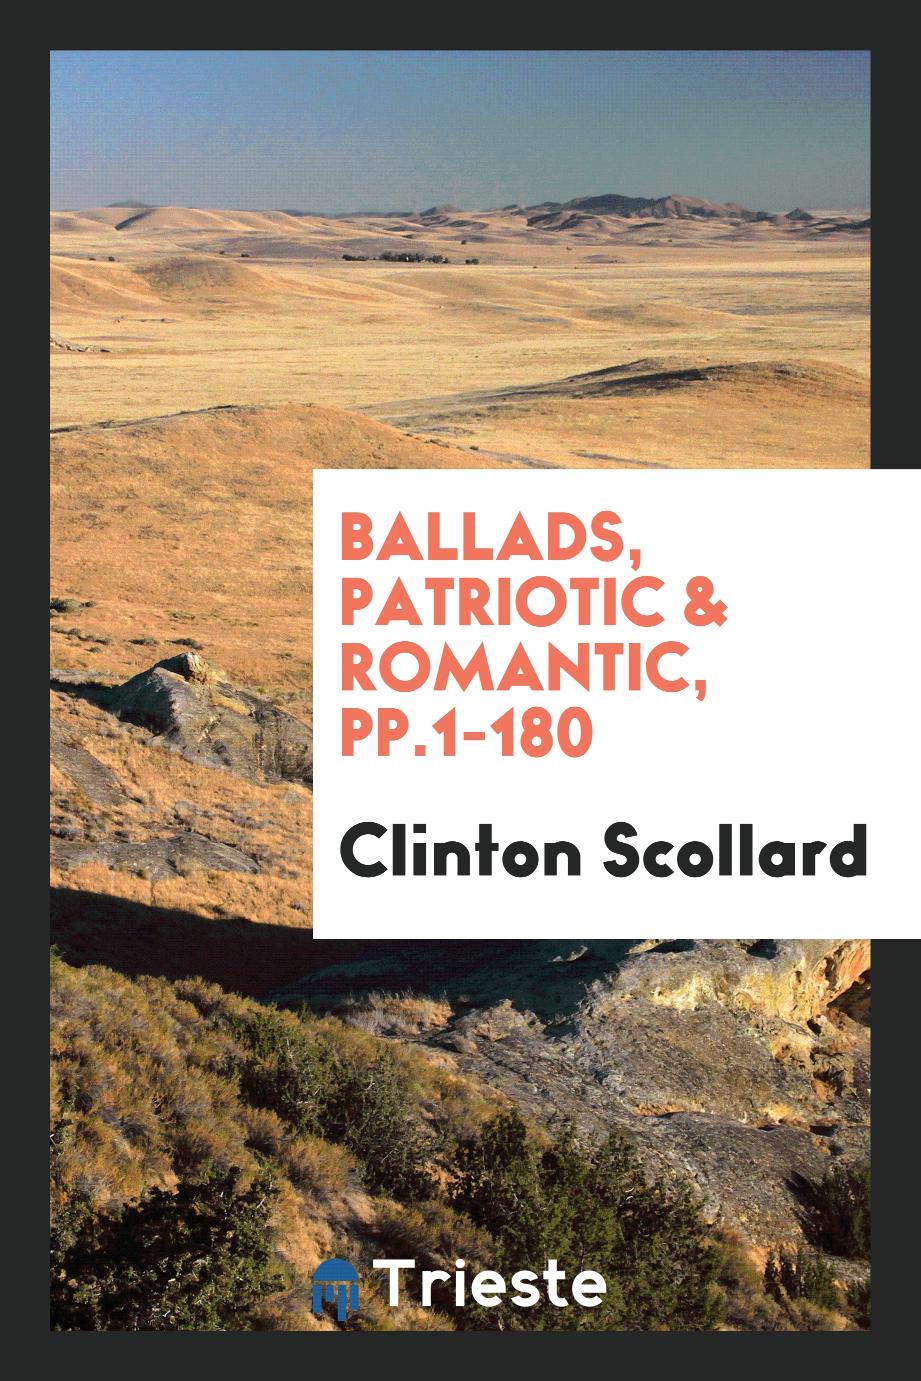 Ballads, Patriotic & Romantic, pp.1-180